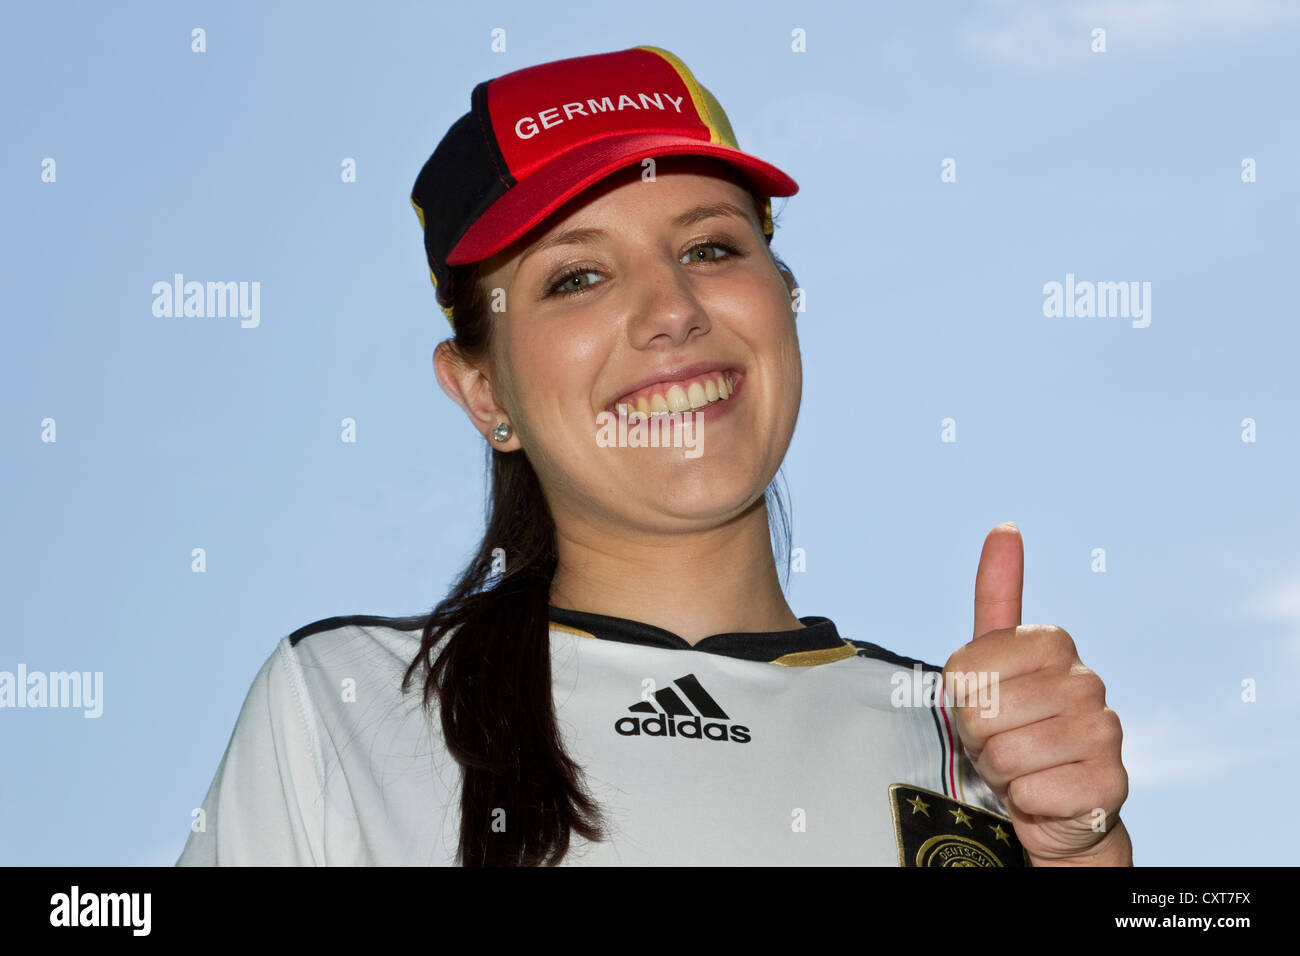 Junge Frau, Fußball-Fan trägt eine Deutschland-Kappe und Jersey, Porträt, ein Daumen-hoch-Geste Stockfoto